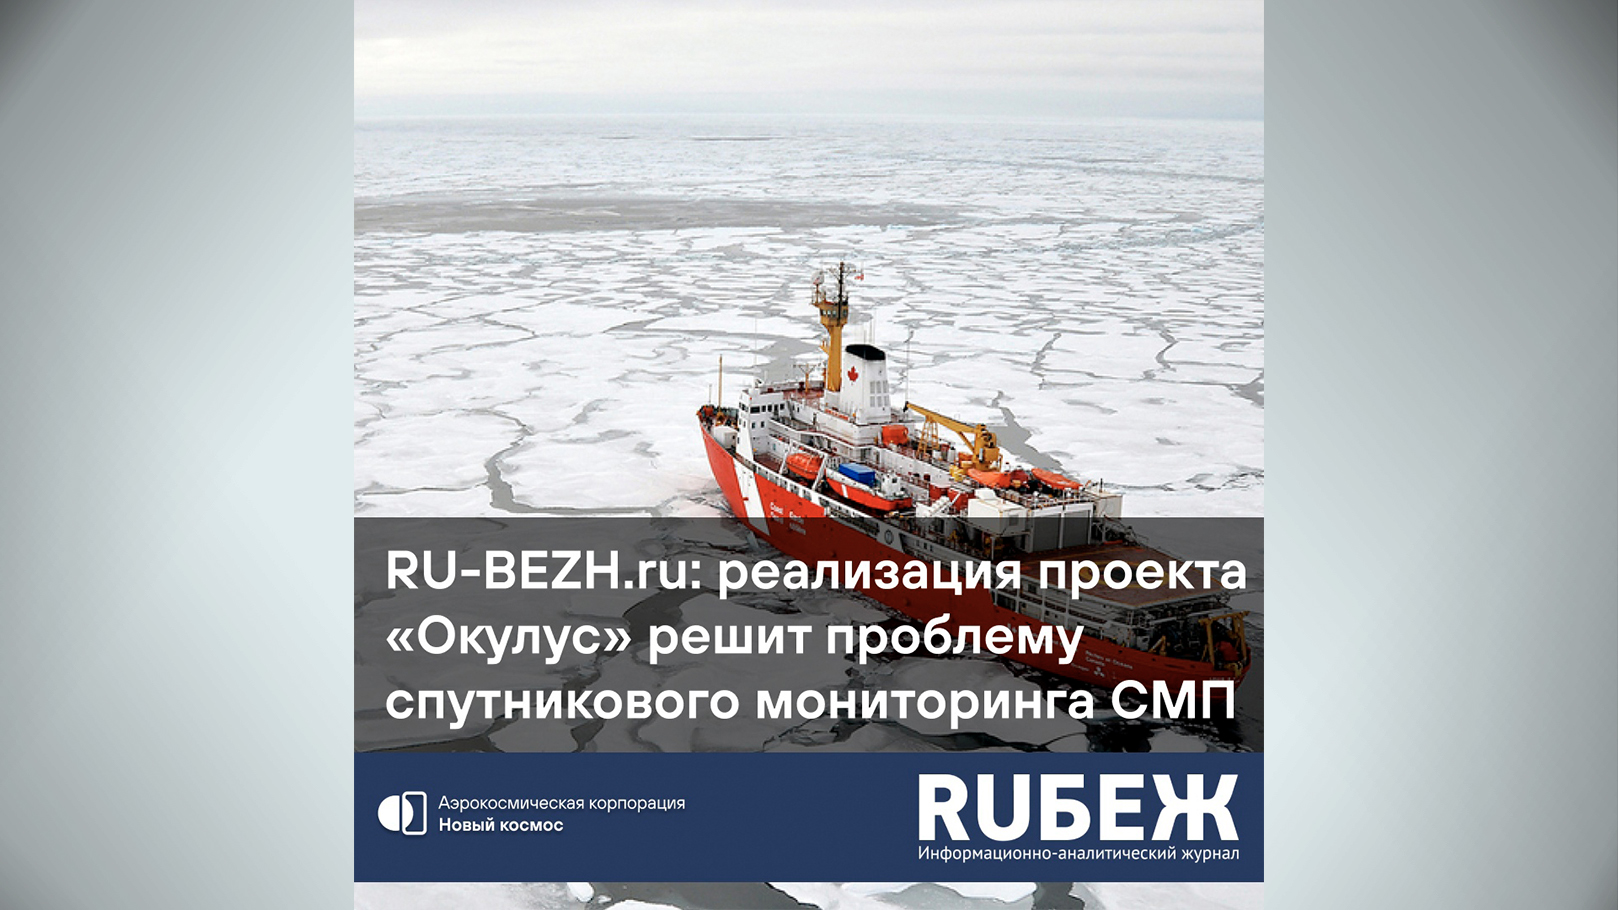 RU-BEZH.ru: реализация проекта Окулус решит проблему мониторинга Севморпути